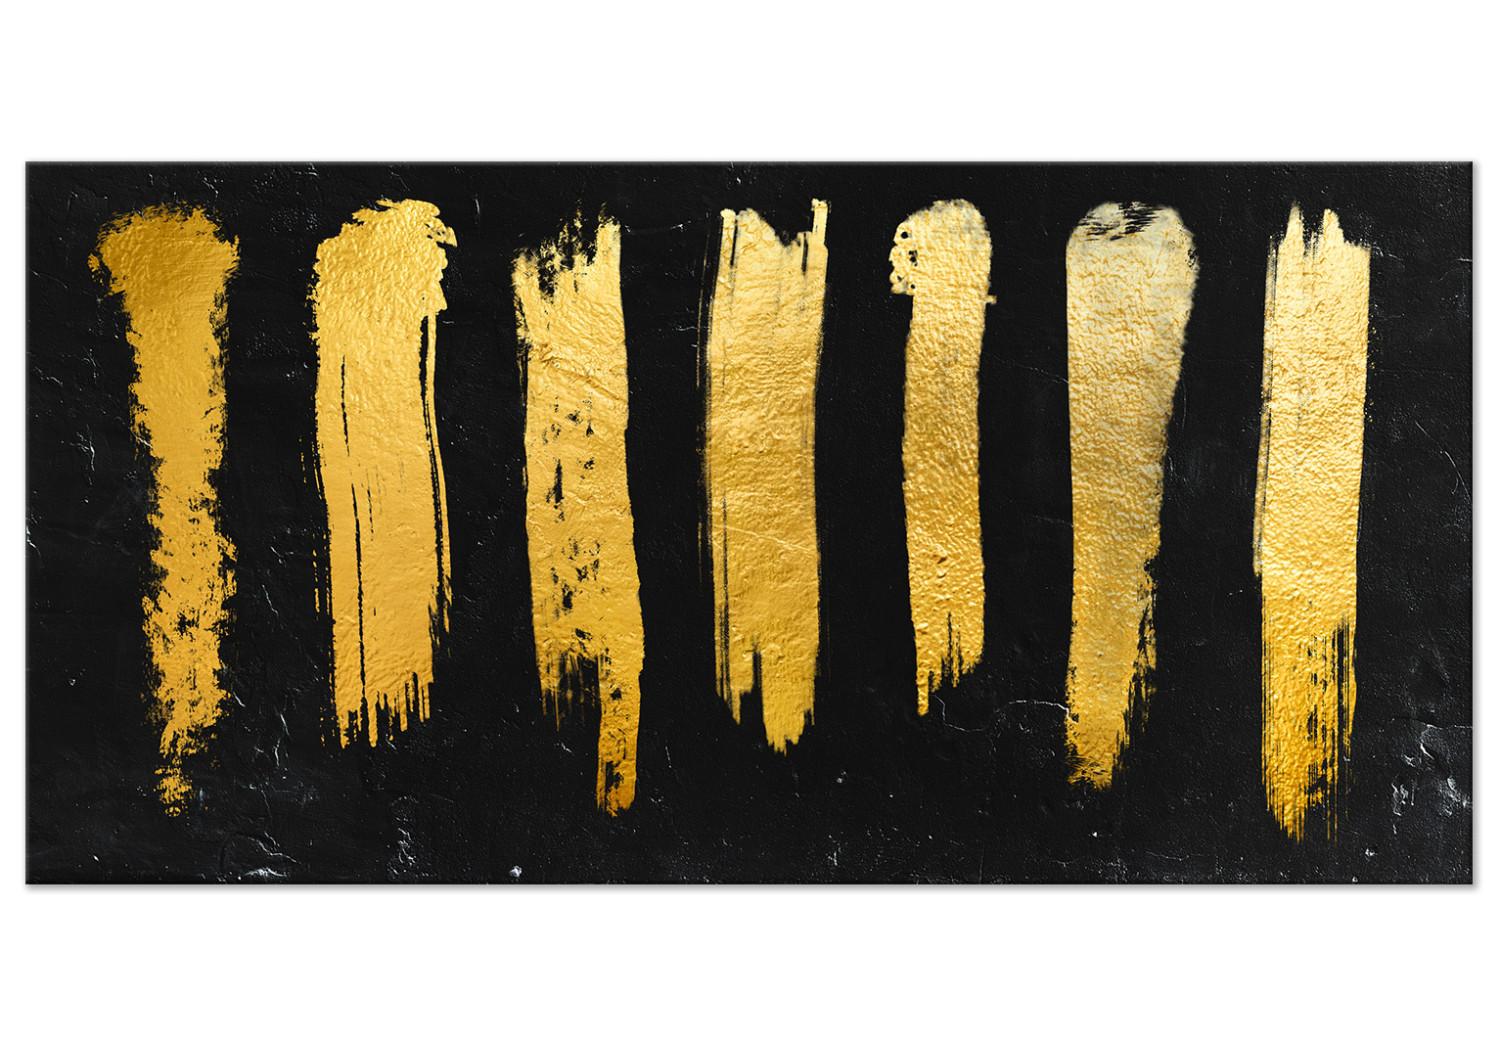 Cuadro Líneas de pincel doradas - abstracción moderna sobre fondo negro